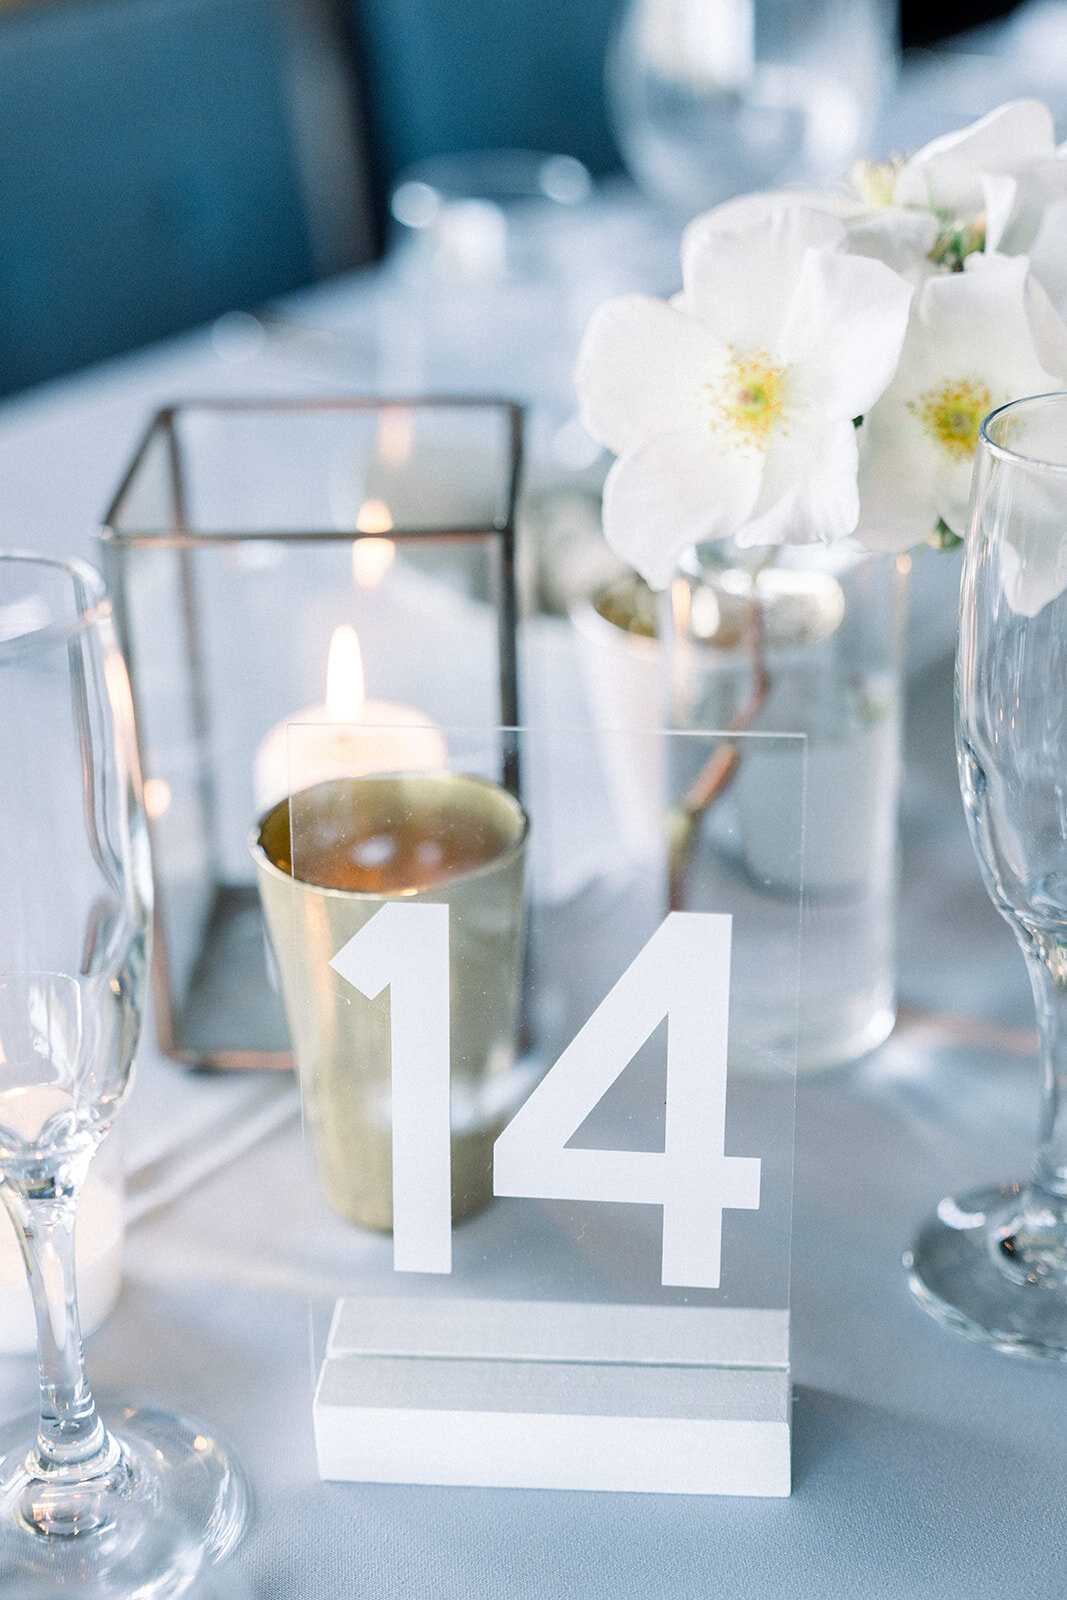 49 acrylic wedding table numbers .jpg